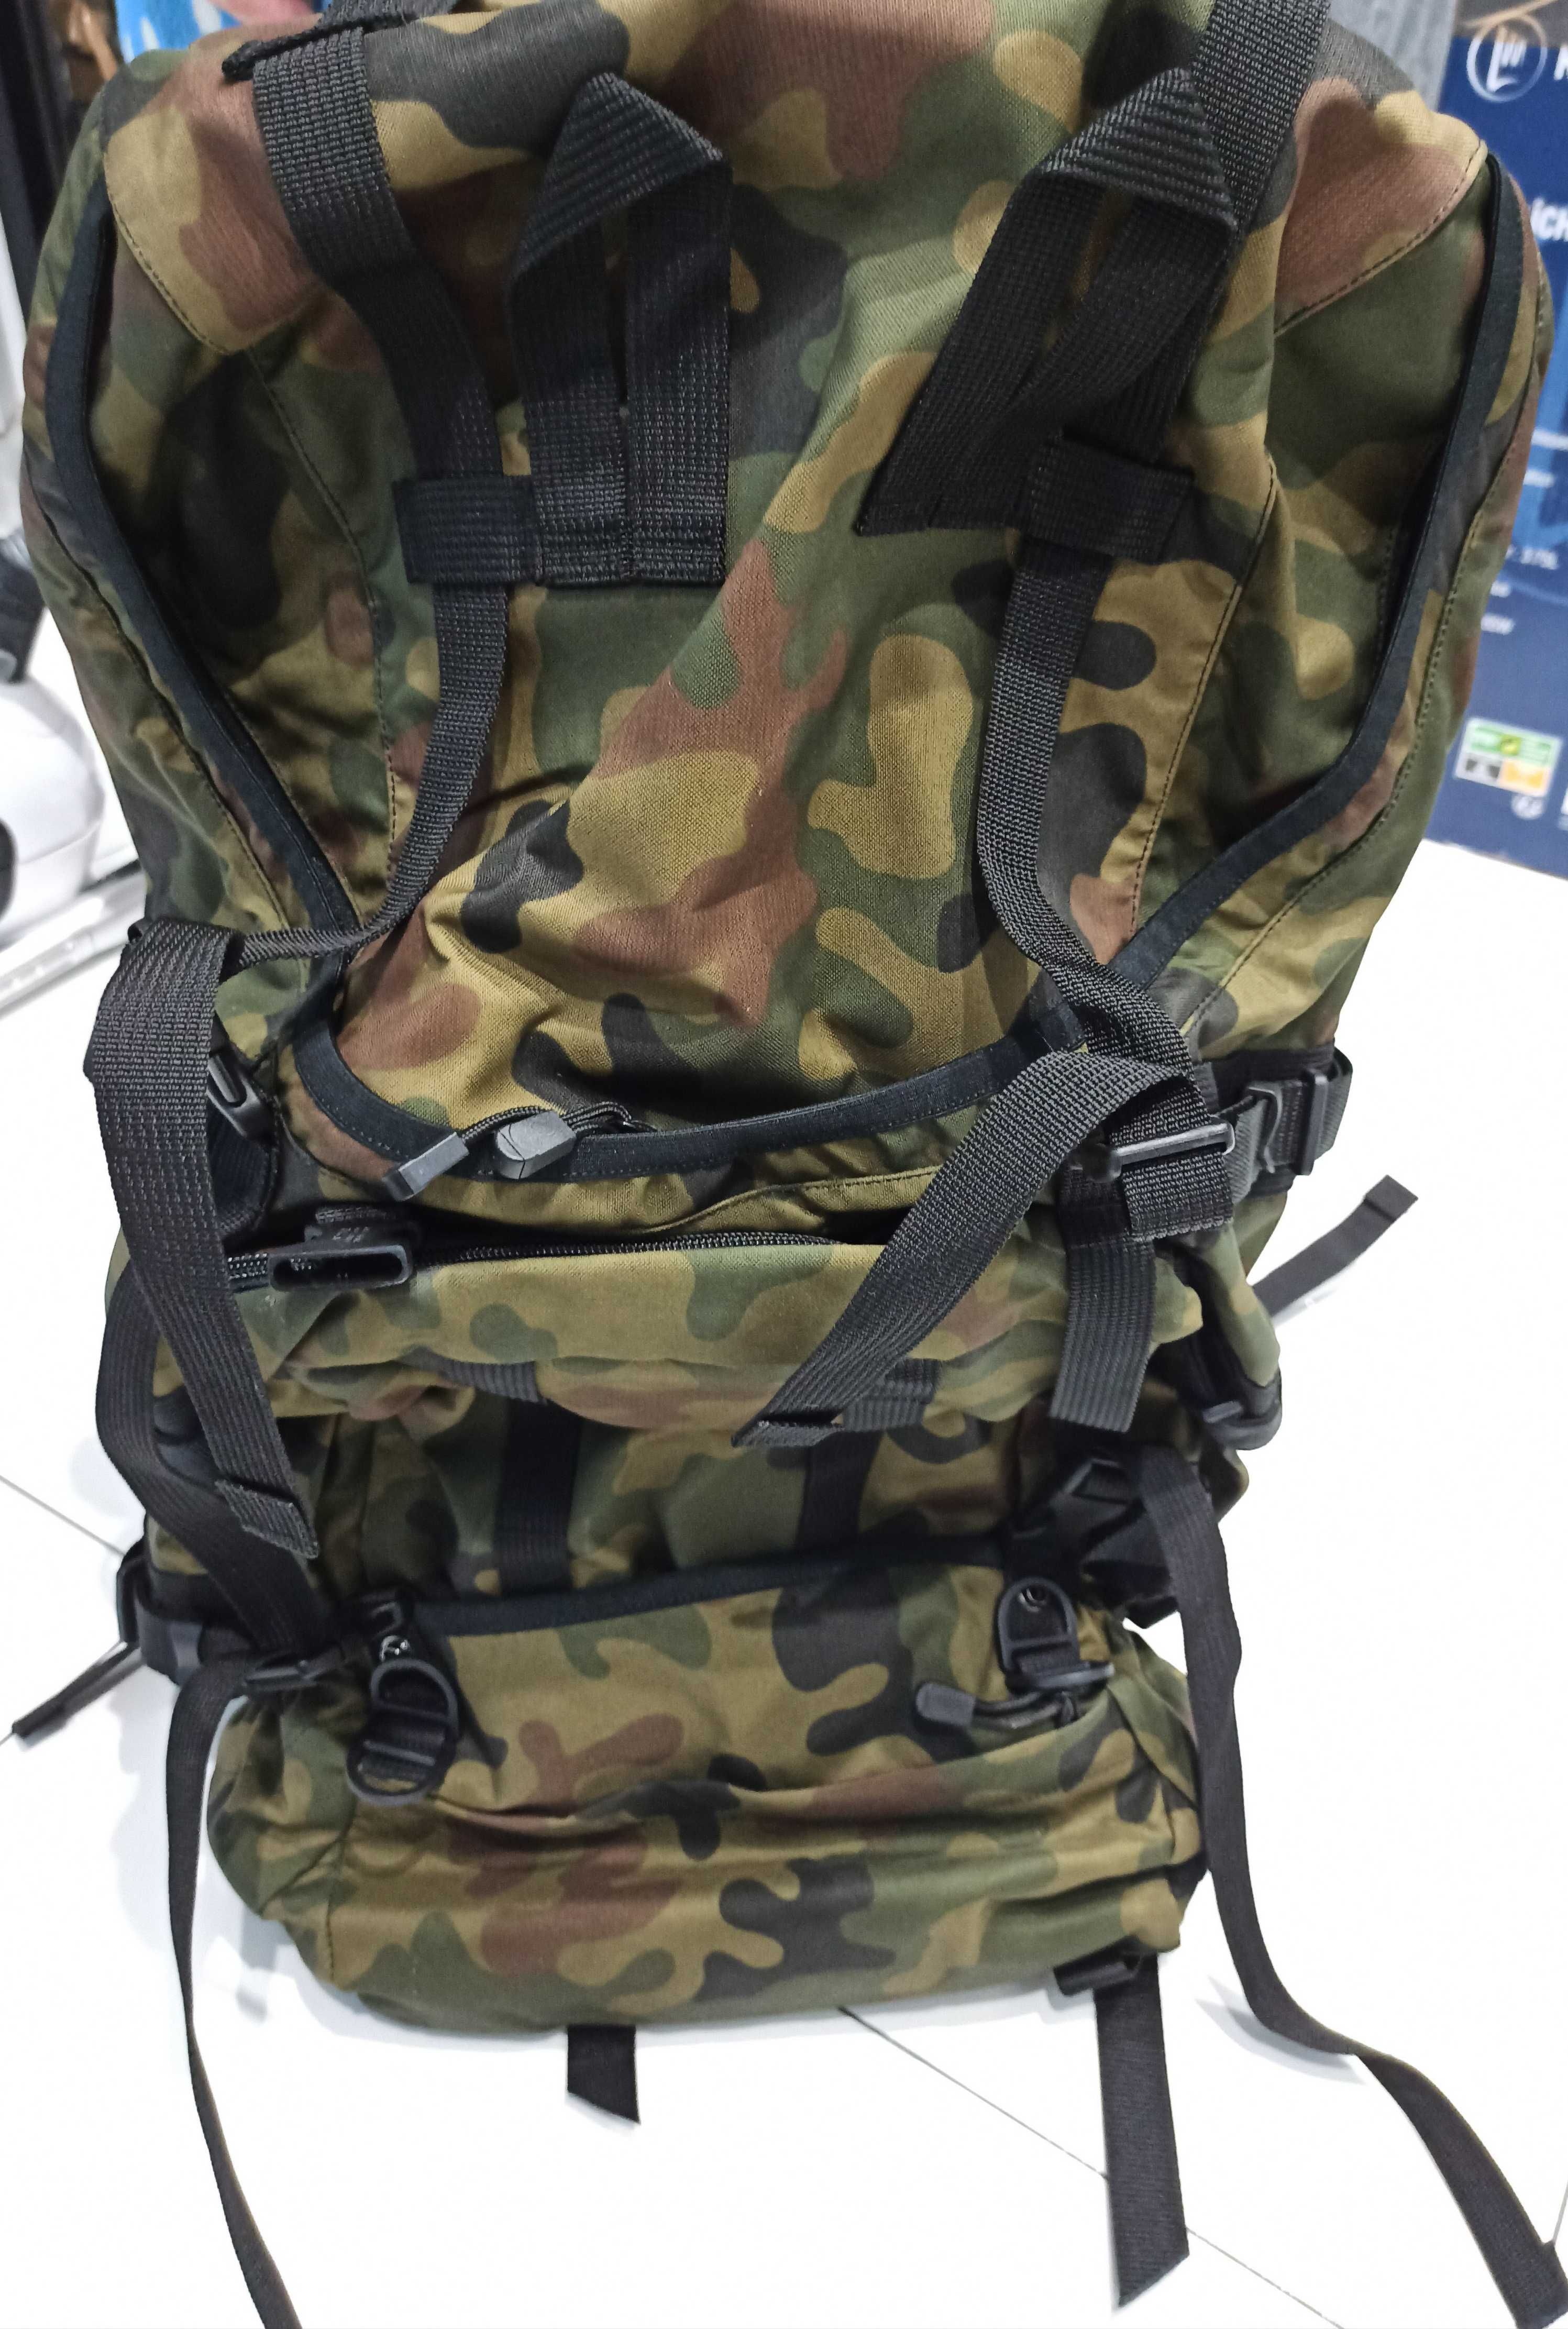 Plecak wojskowy duży